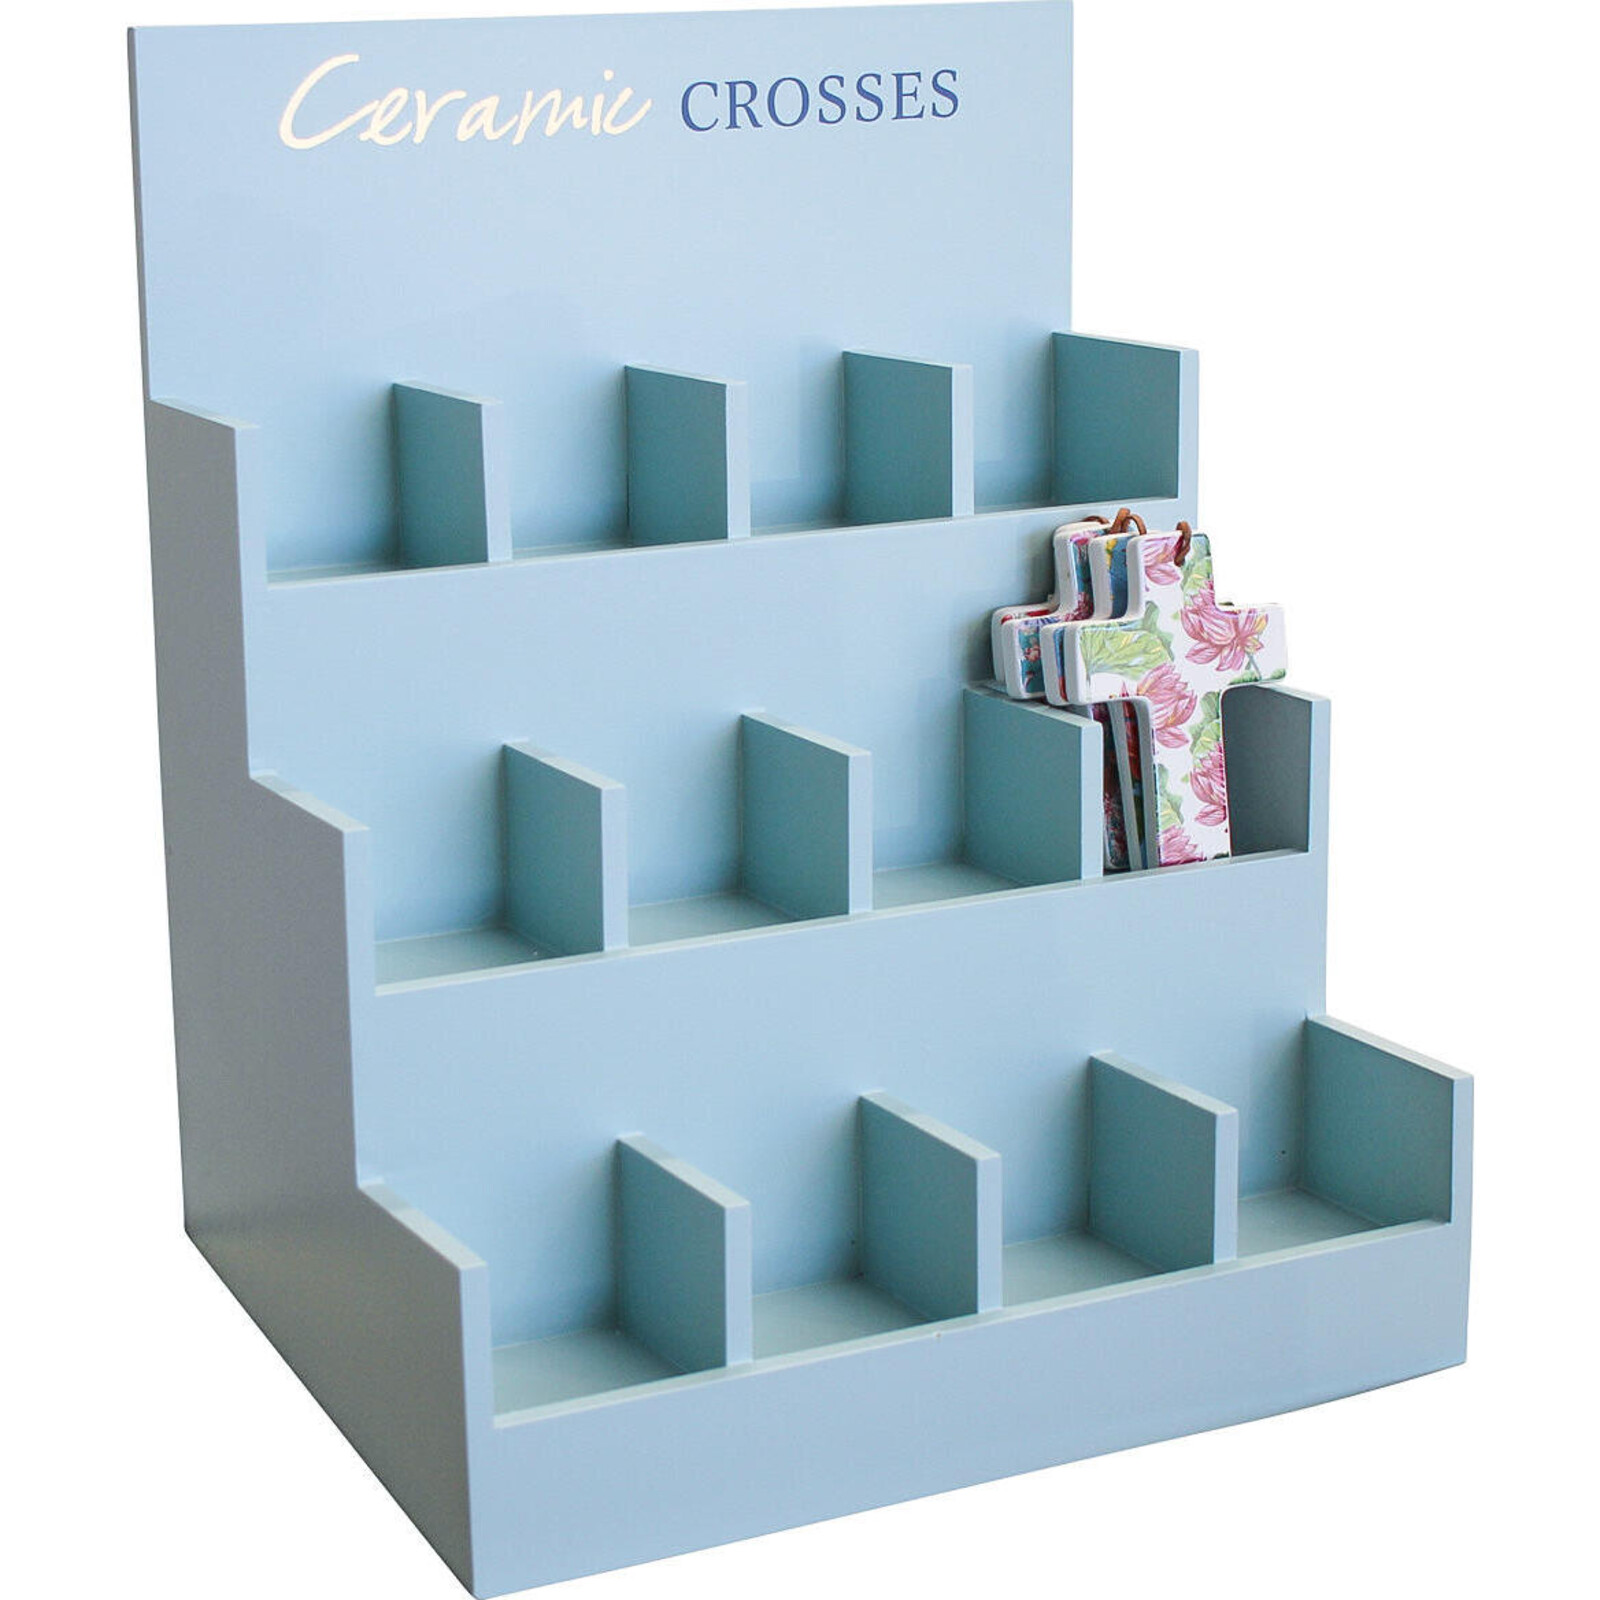 Display Box Ceramic Crosses